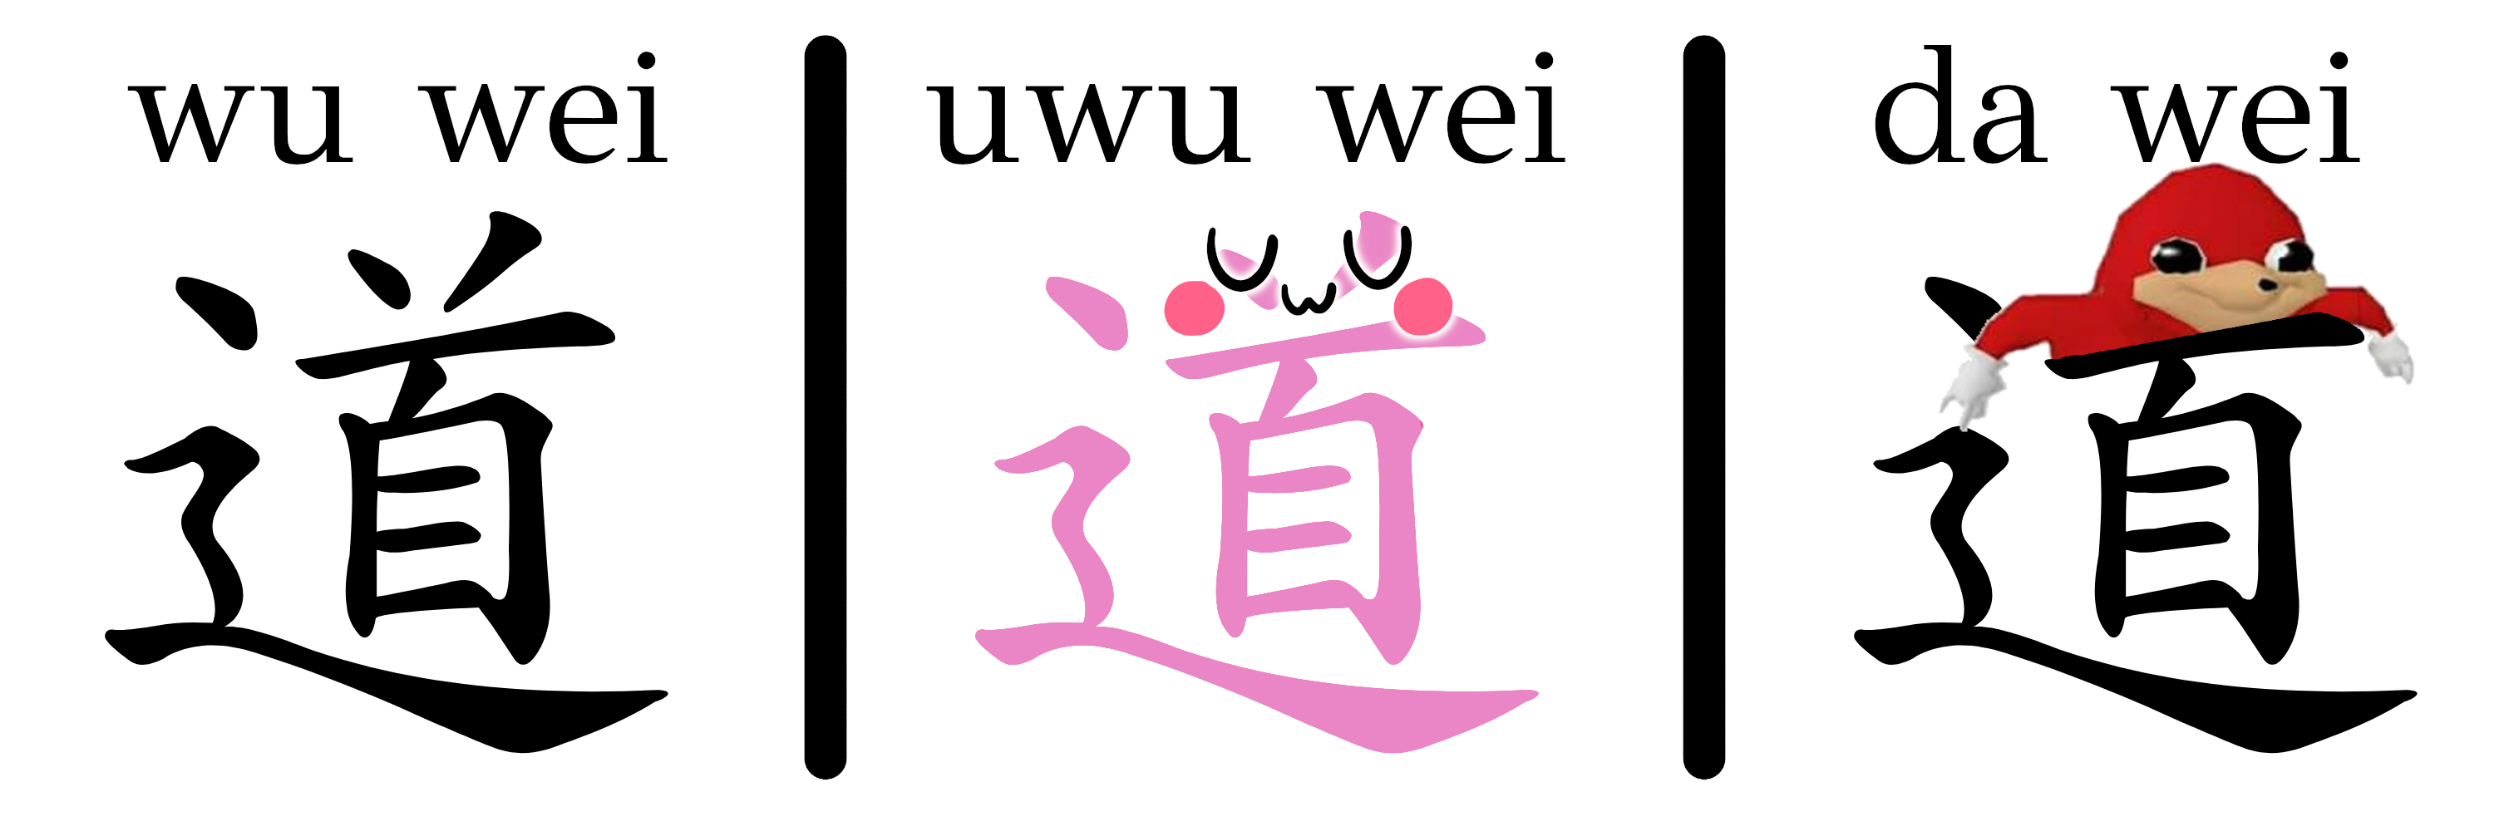 wu wei / uwu wei / da wei